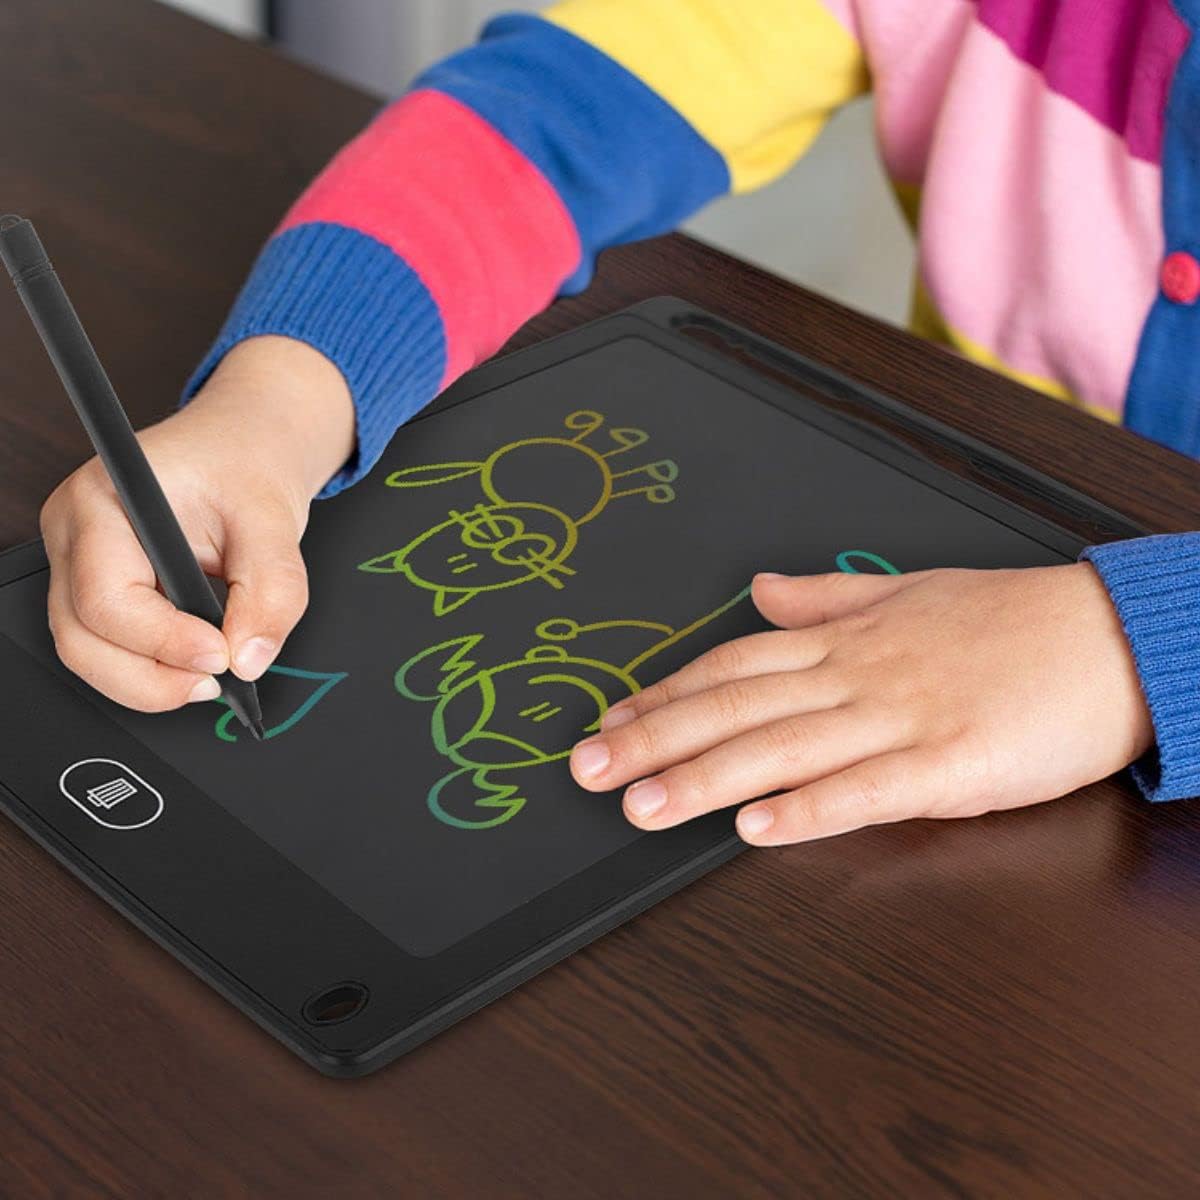 Lousa Mágica Tablet Lcd 8.5 Polegadas Escrever e Pintar e Desenhar